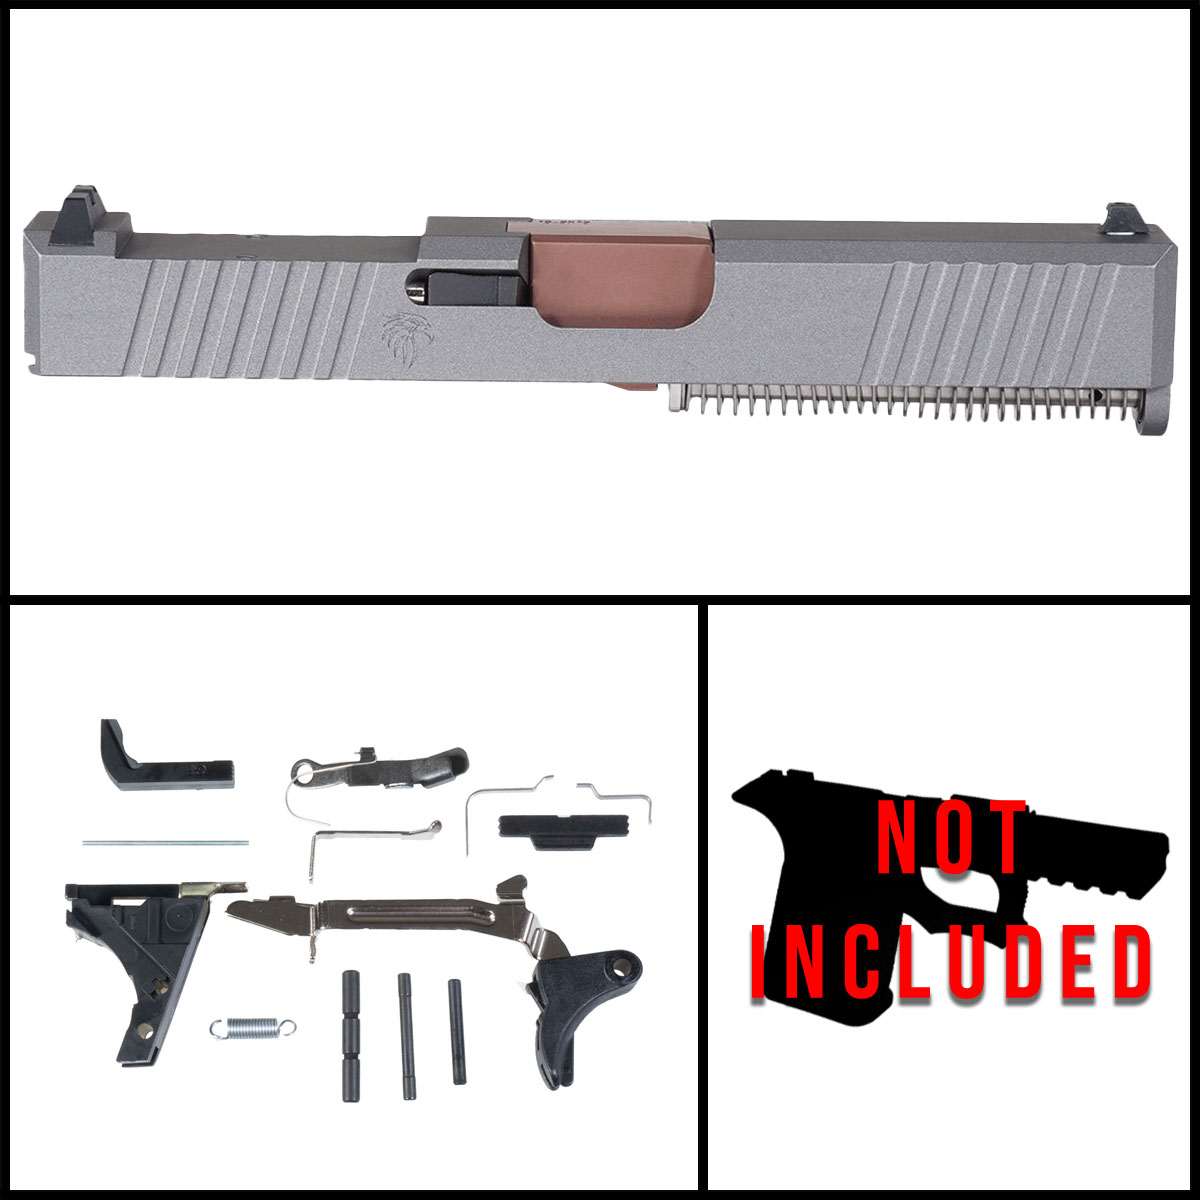 OTD 'HSARM' 9mm Full Pistol Build Kit (Everything Minus Frame) - Glock 19 Gen 1-3 Compatible